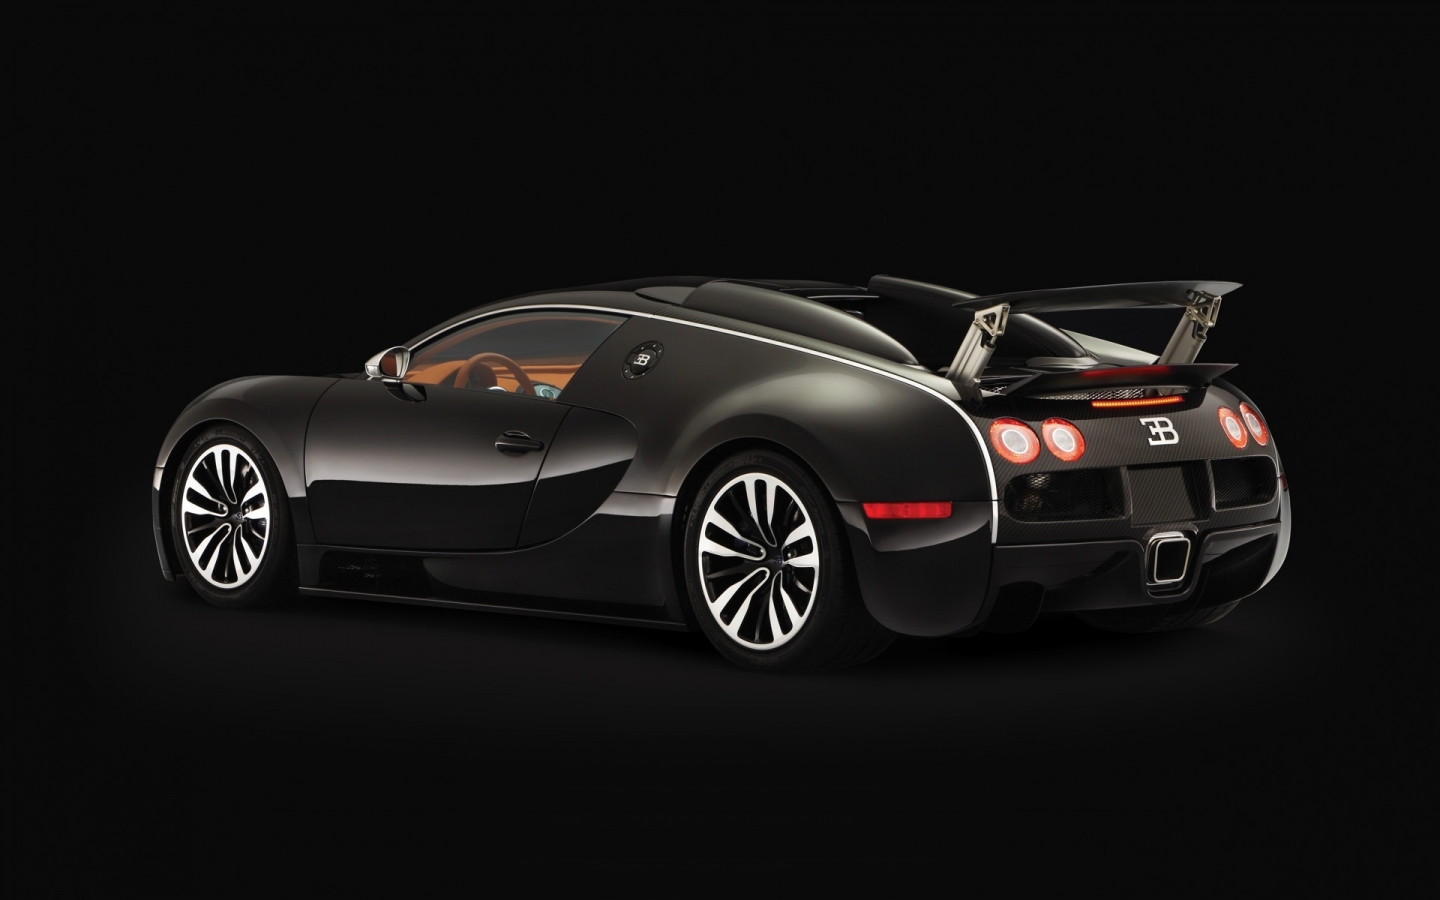 Bugatti Veyron Sang Noir 2008 - Rear Angle for 1440 x 900 widescreen resolution